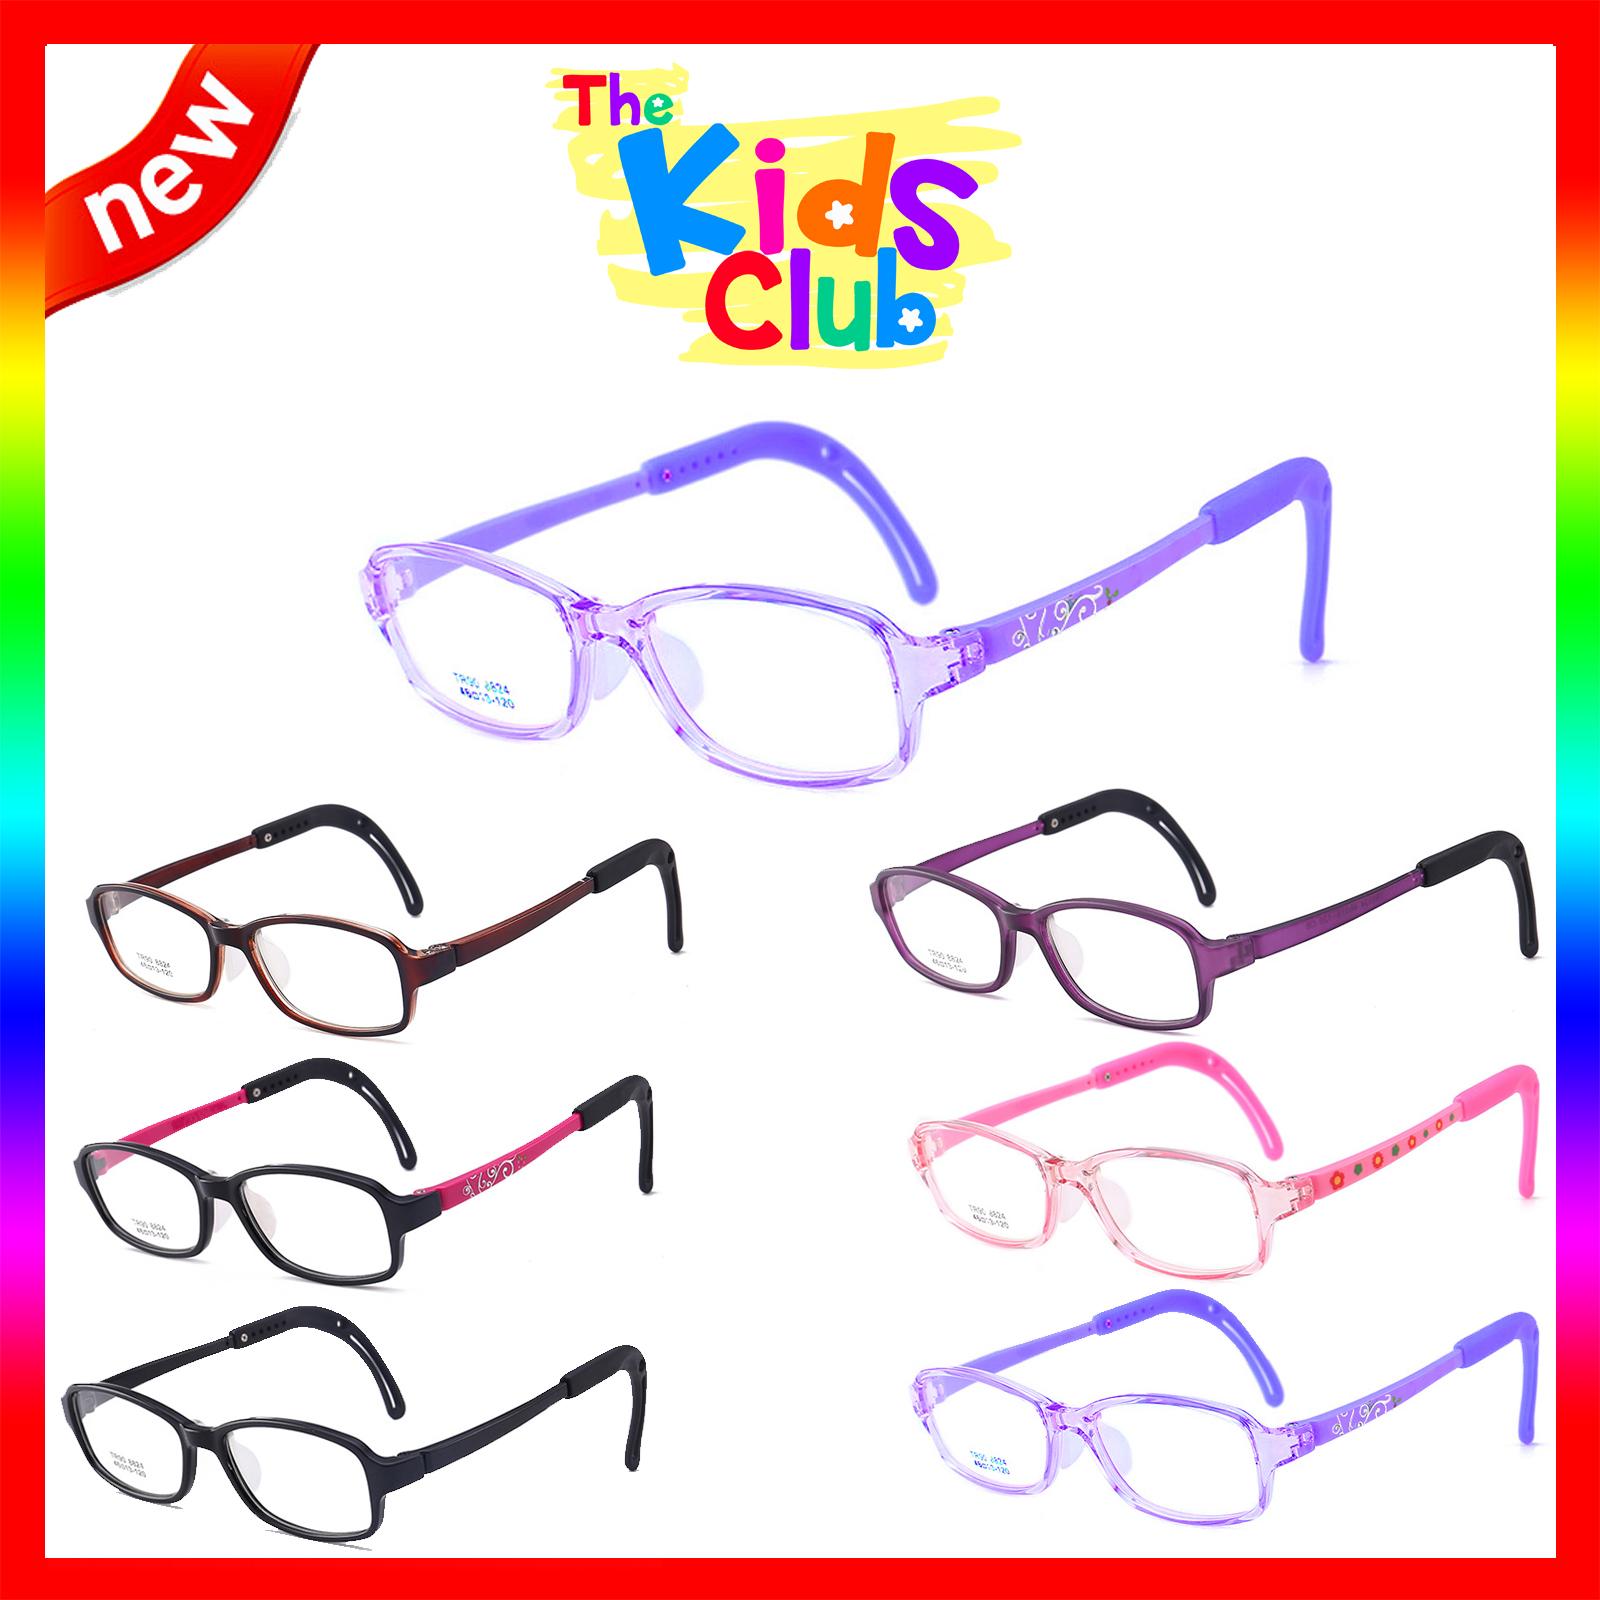 แว่นตาเกาหลีเด็ก Fashion Korea Children แว่นตาเด็ก รุ่น 8824 กรอบแว่นตาเด็ก Square ทรงสี่เหลี่ยม Eyeglass baby frame ( สำหรับตัดเลนส์ ) วัสดุ TR-90 เบาและยืดหยุนได้สูง ขาข้อต่อ Kid eyewear Glasses